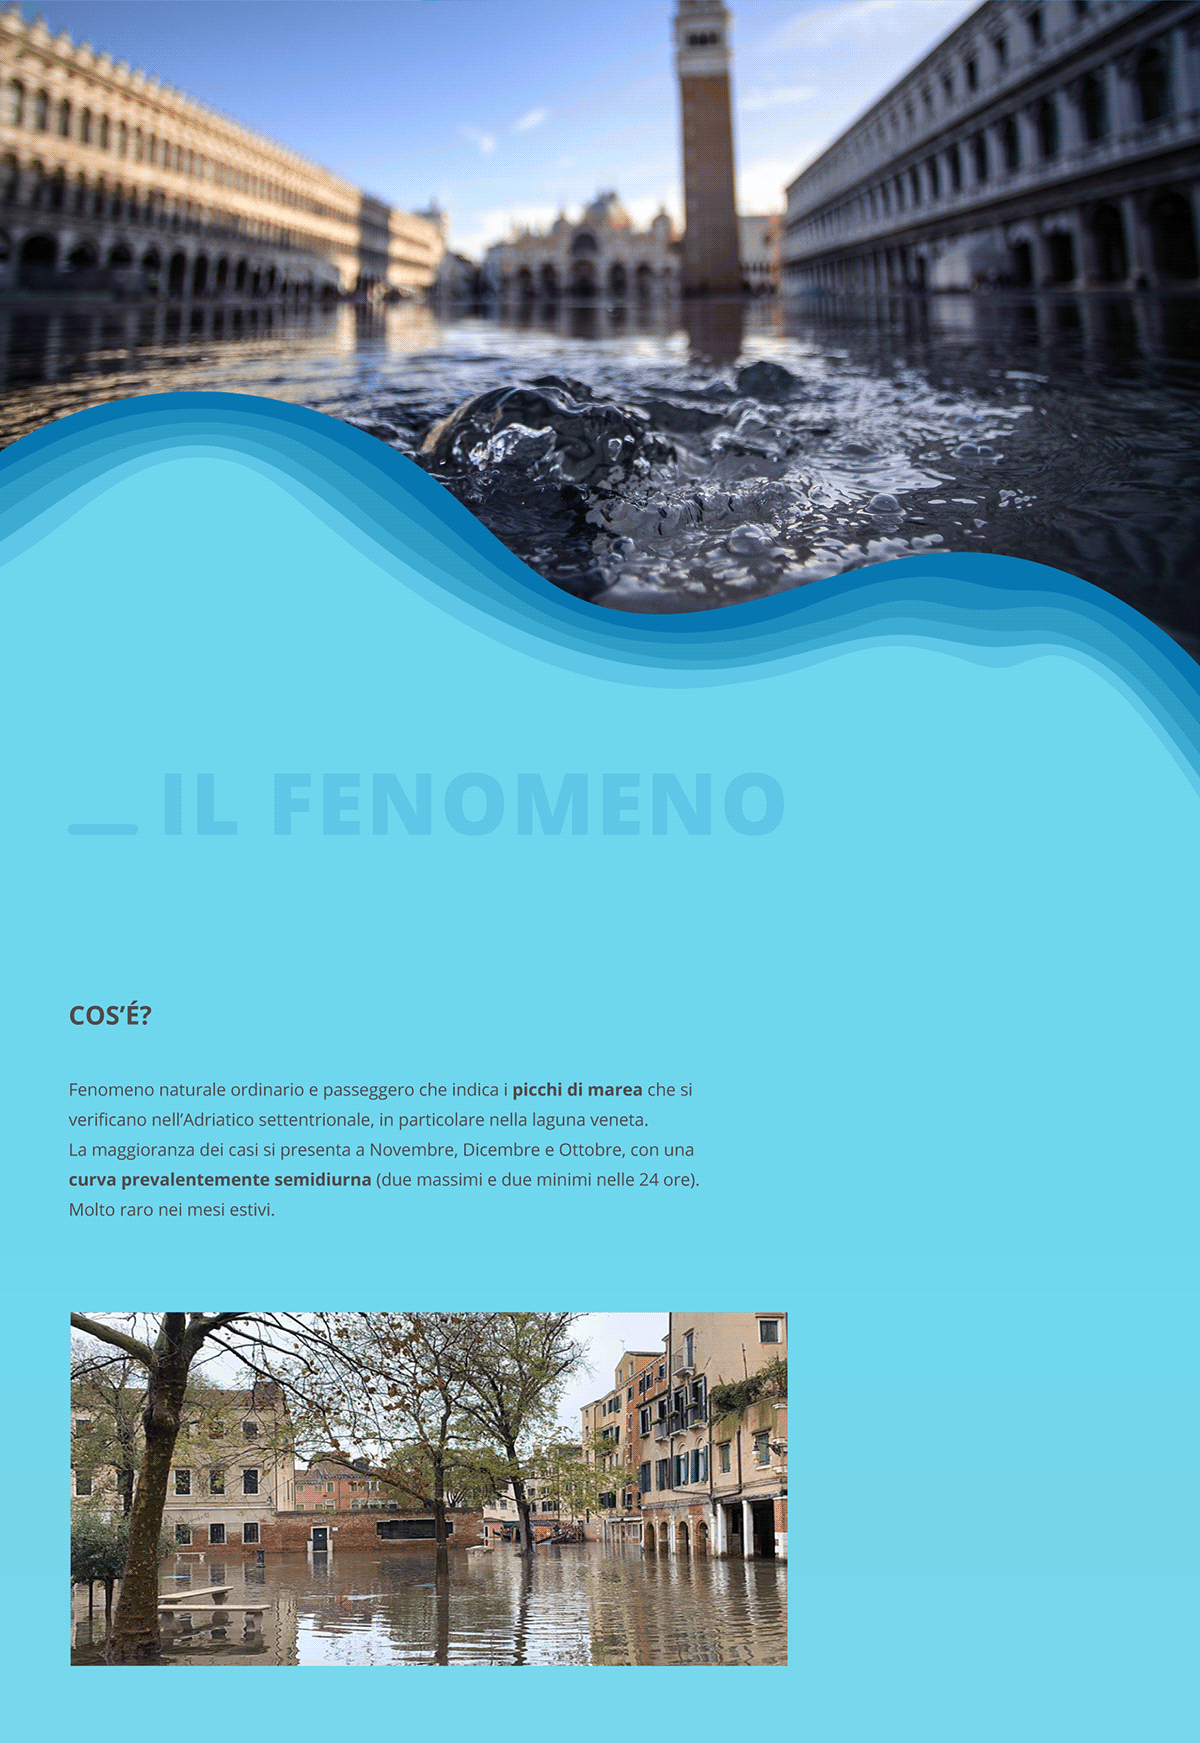 acqua alta applicazione flat ILLUSTRATION  mobile UI ux venezia Venice Web Design 